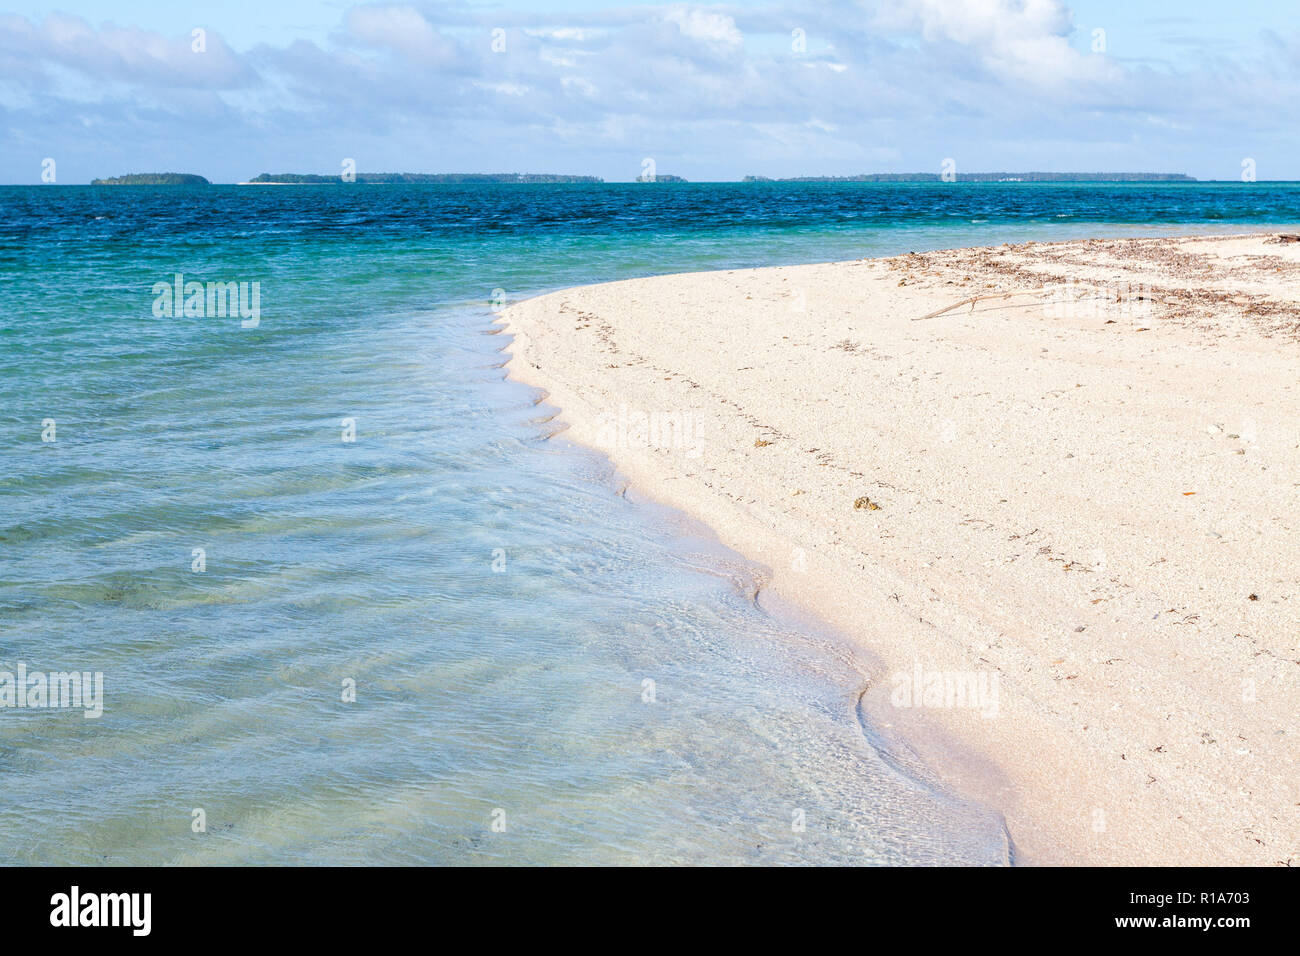 El atolón de Majuro, Islas Marshall, Micronesia, Oceanía. Reflexión, refracción, interferencia y difracción de las olas del mar. Laura Beach. Laguna Azul. Foto de stock